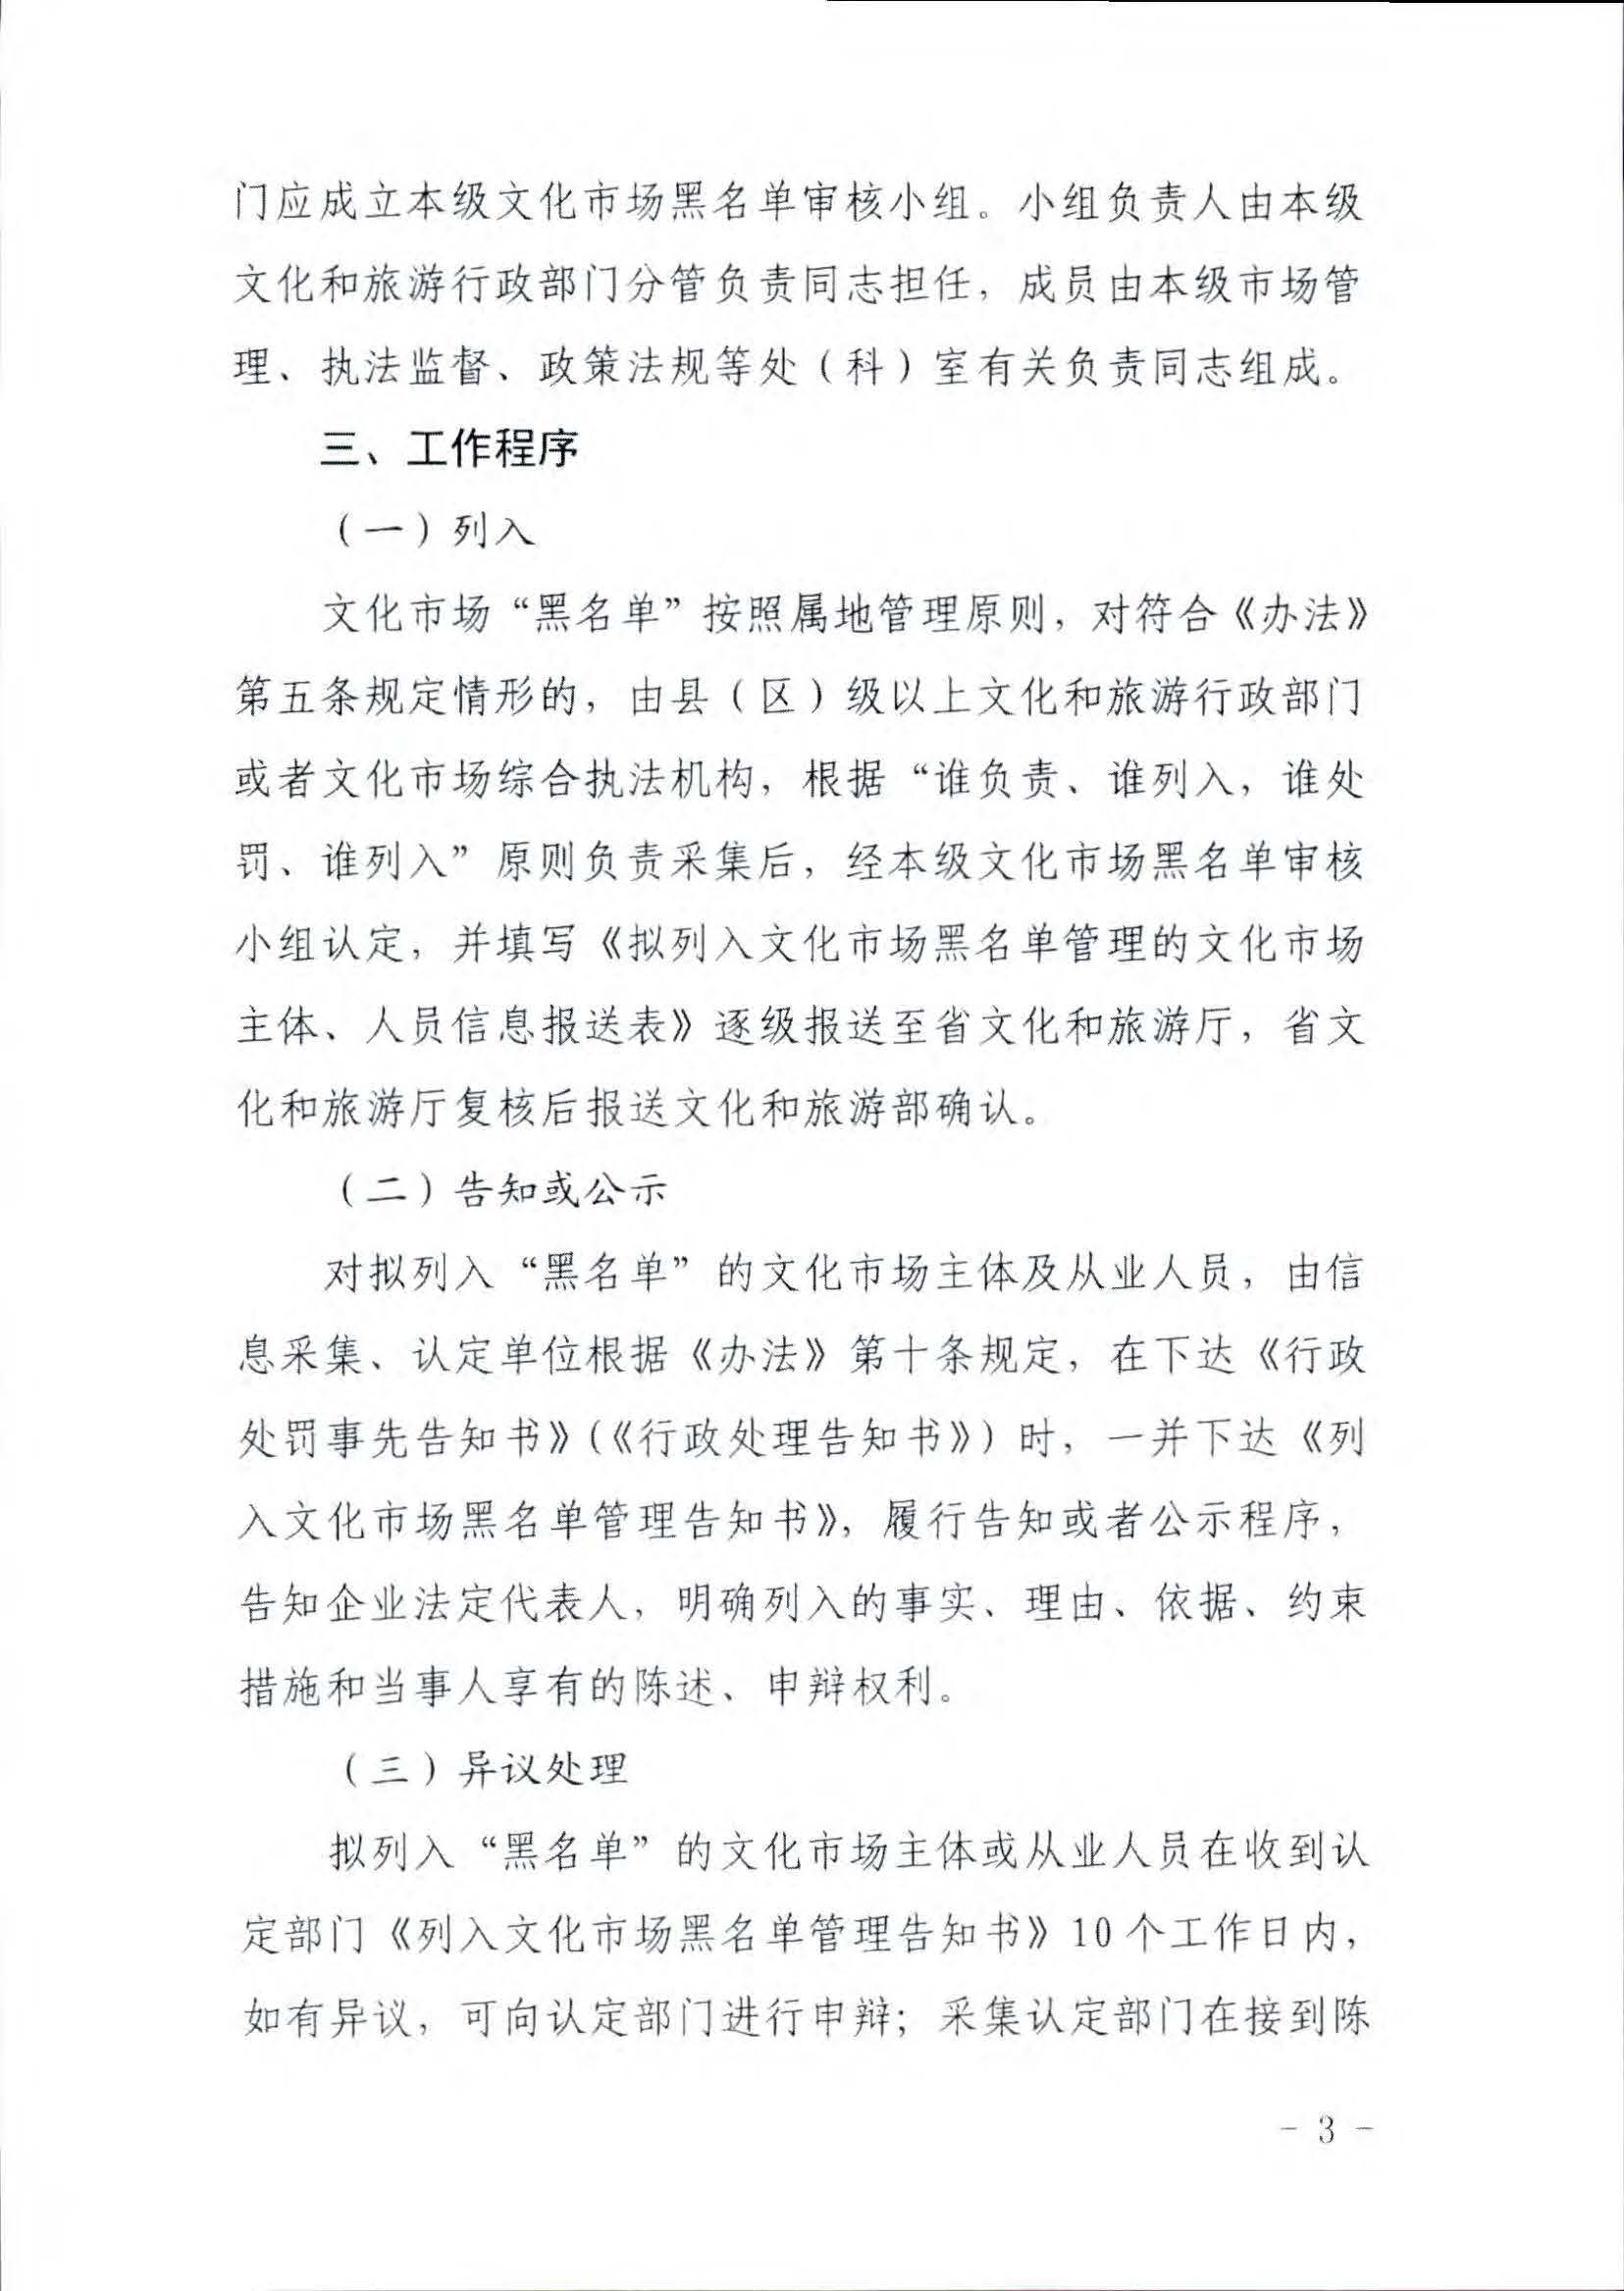 广东省文化和旅游厅关于推进文化和旅游市场信用修复工作的通知_页面_12.jpg